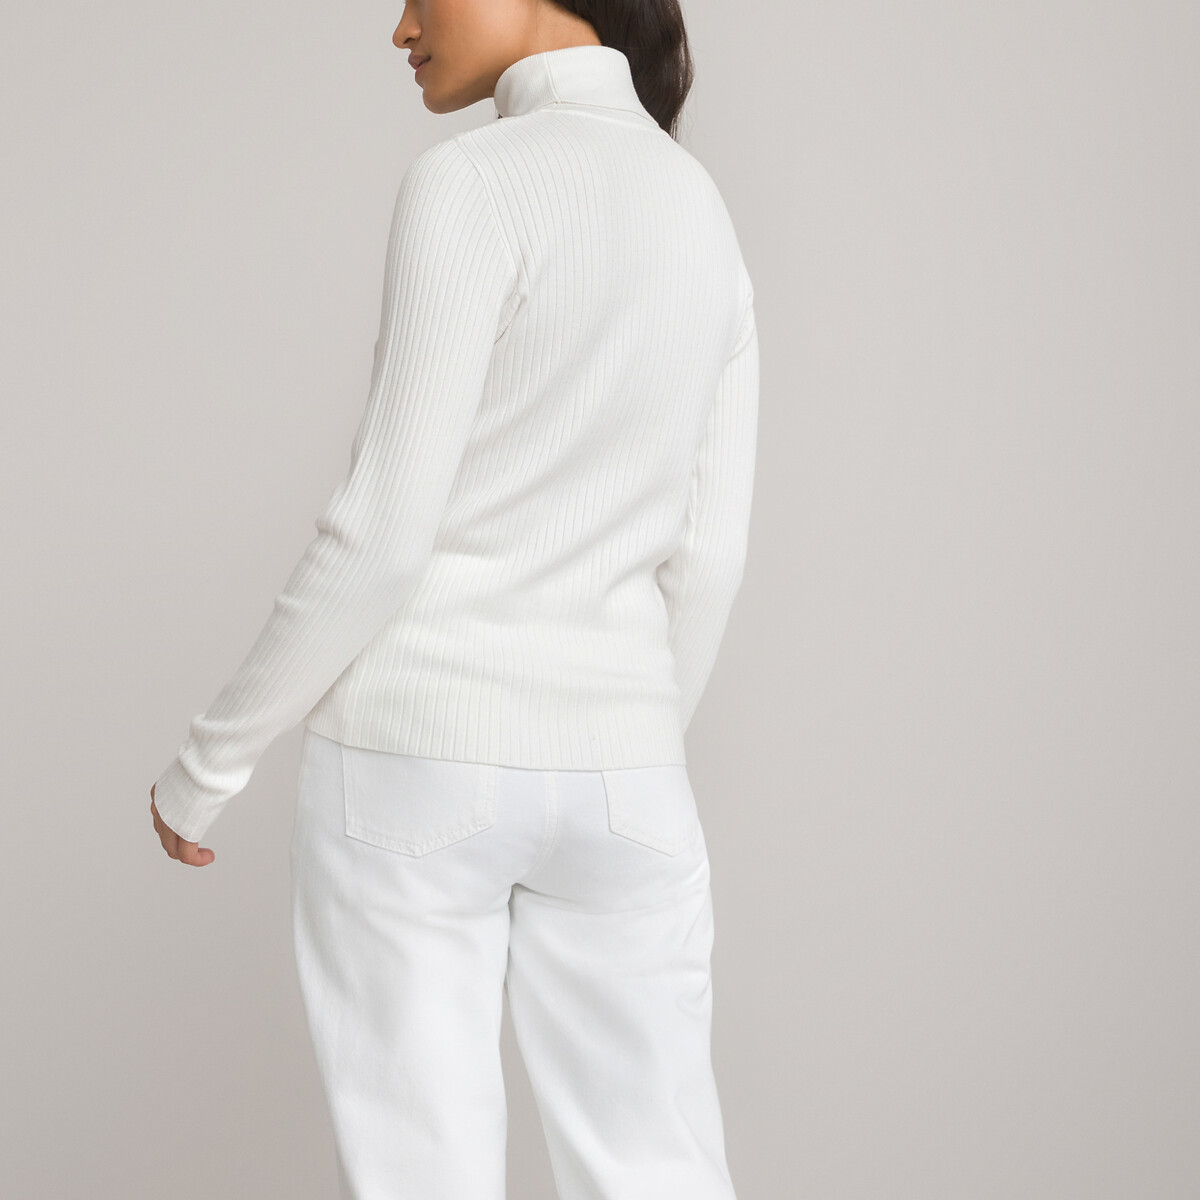 Пуловер Базовый с высоким воротником рифленый трикотаж XS белый LaRedoute, размер XS - фото 4